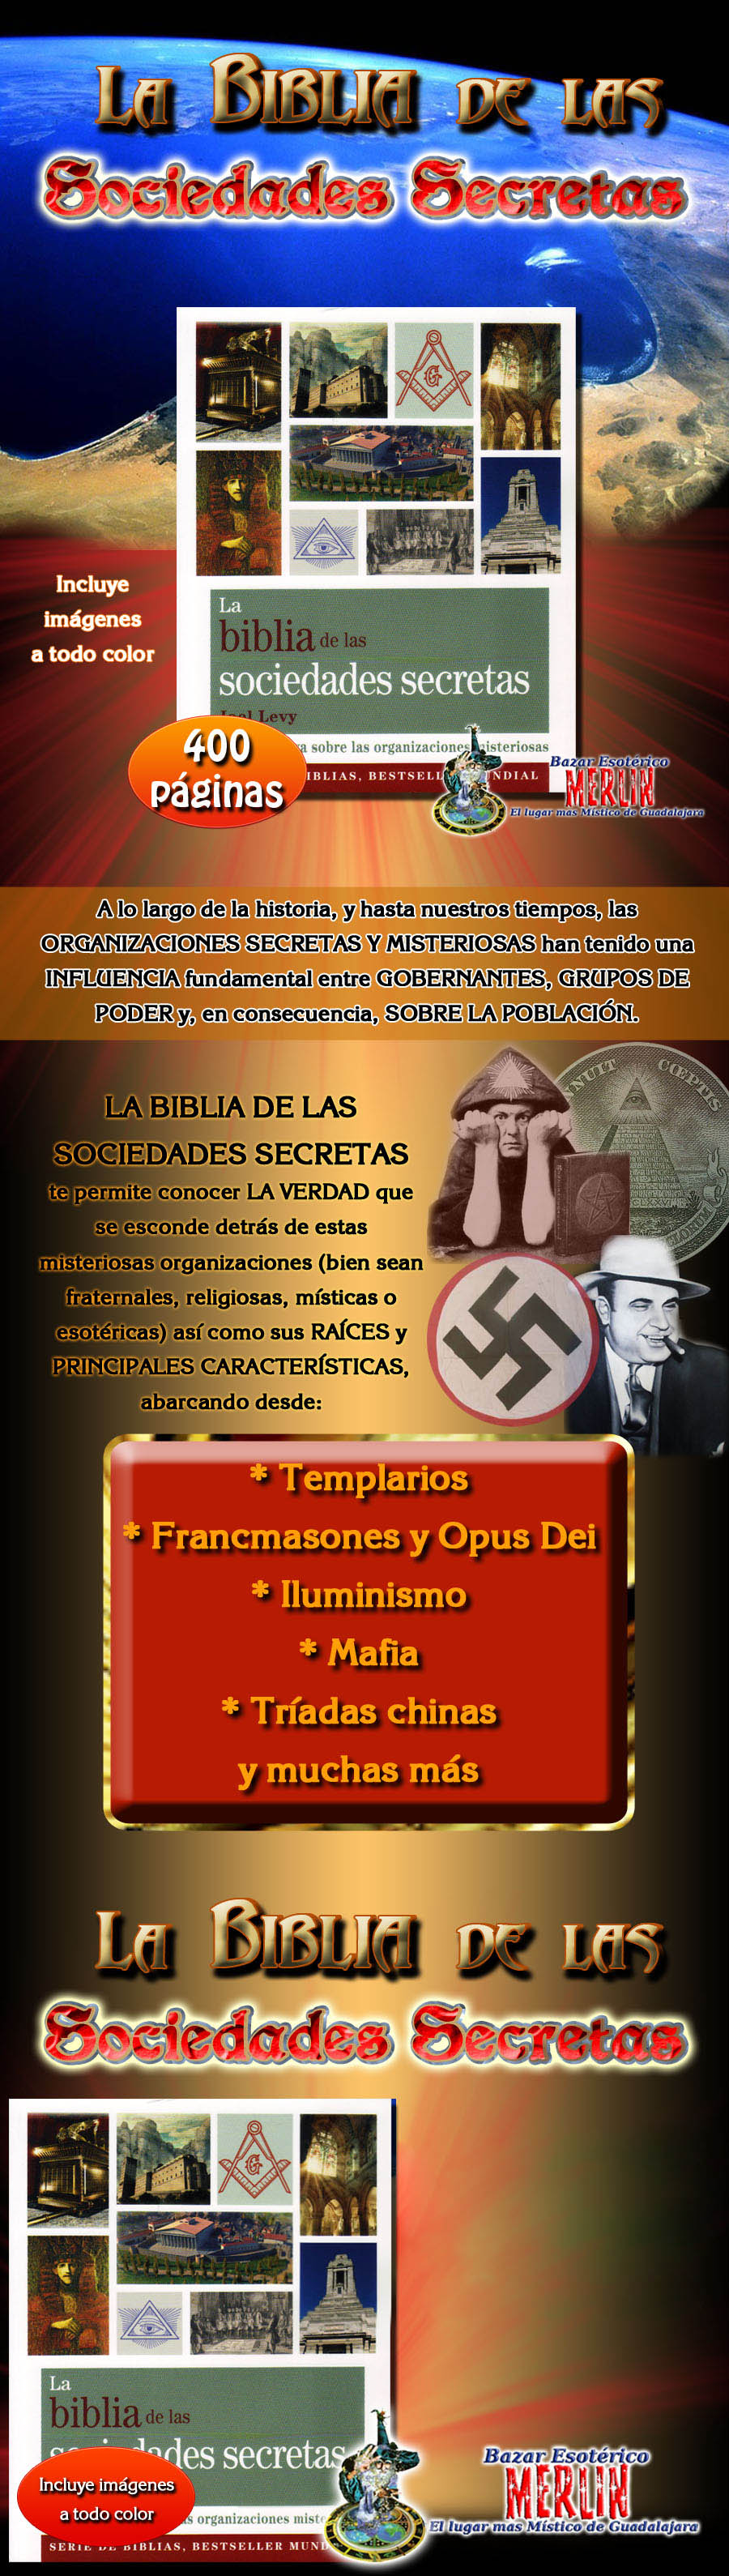 biblia_de_las_sociedades_secretas_diseno_bazar_merlin